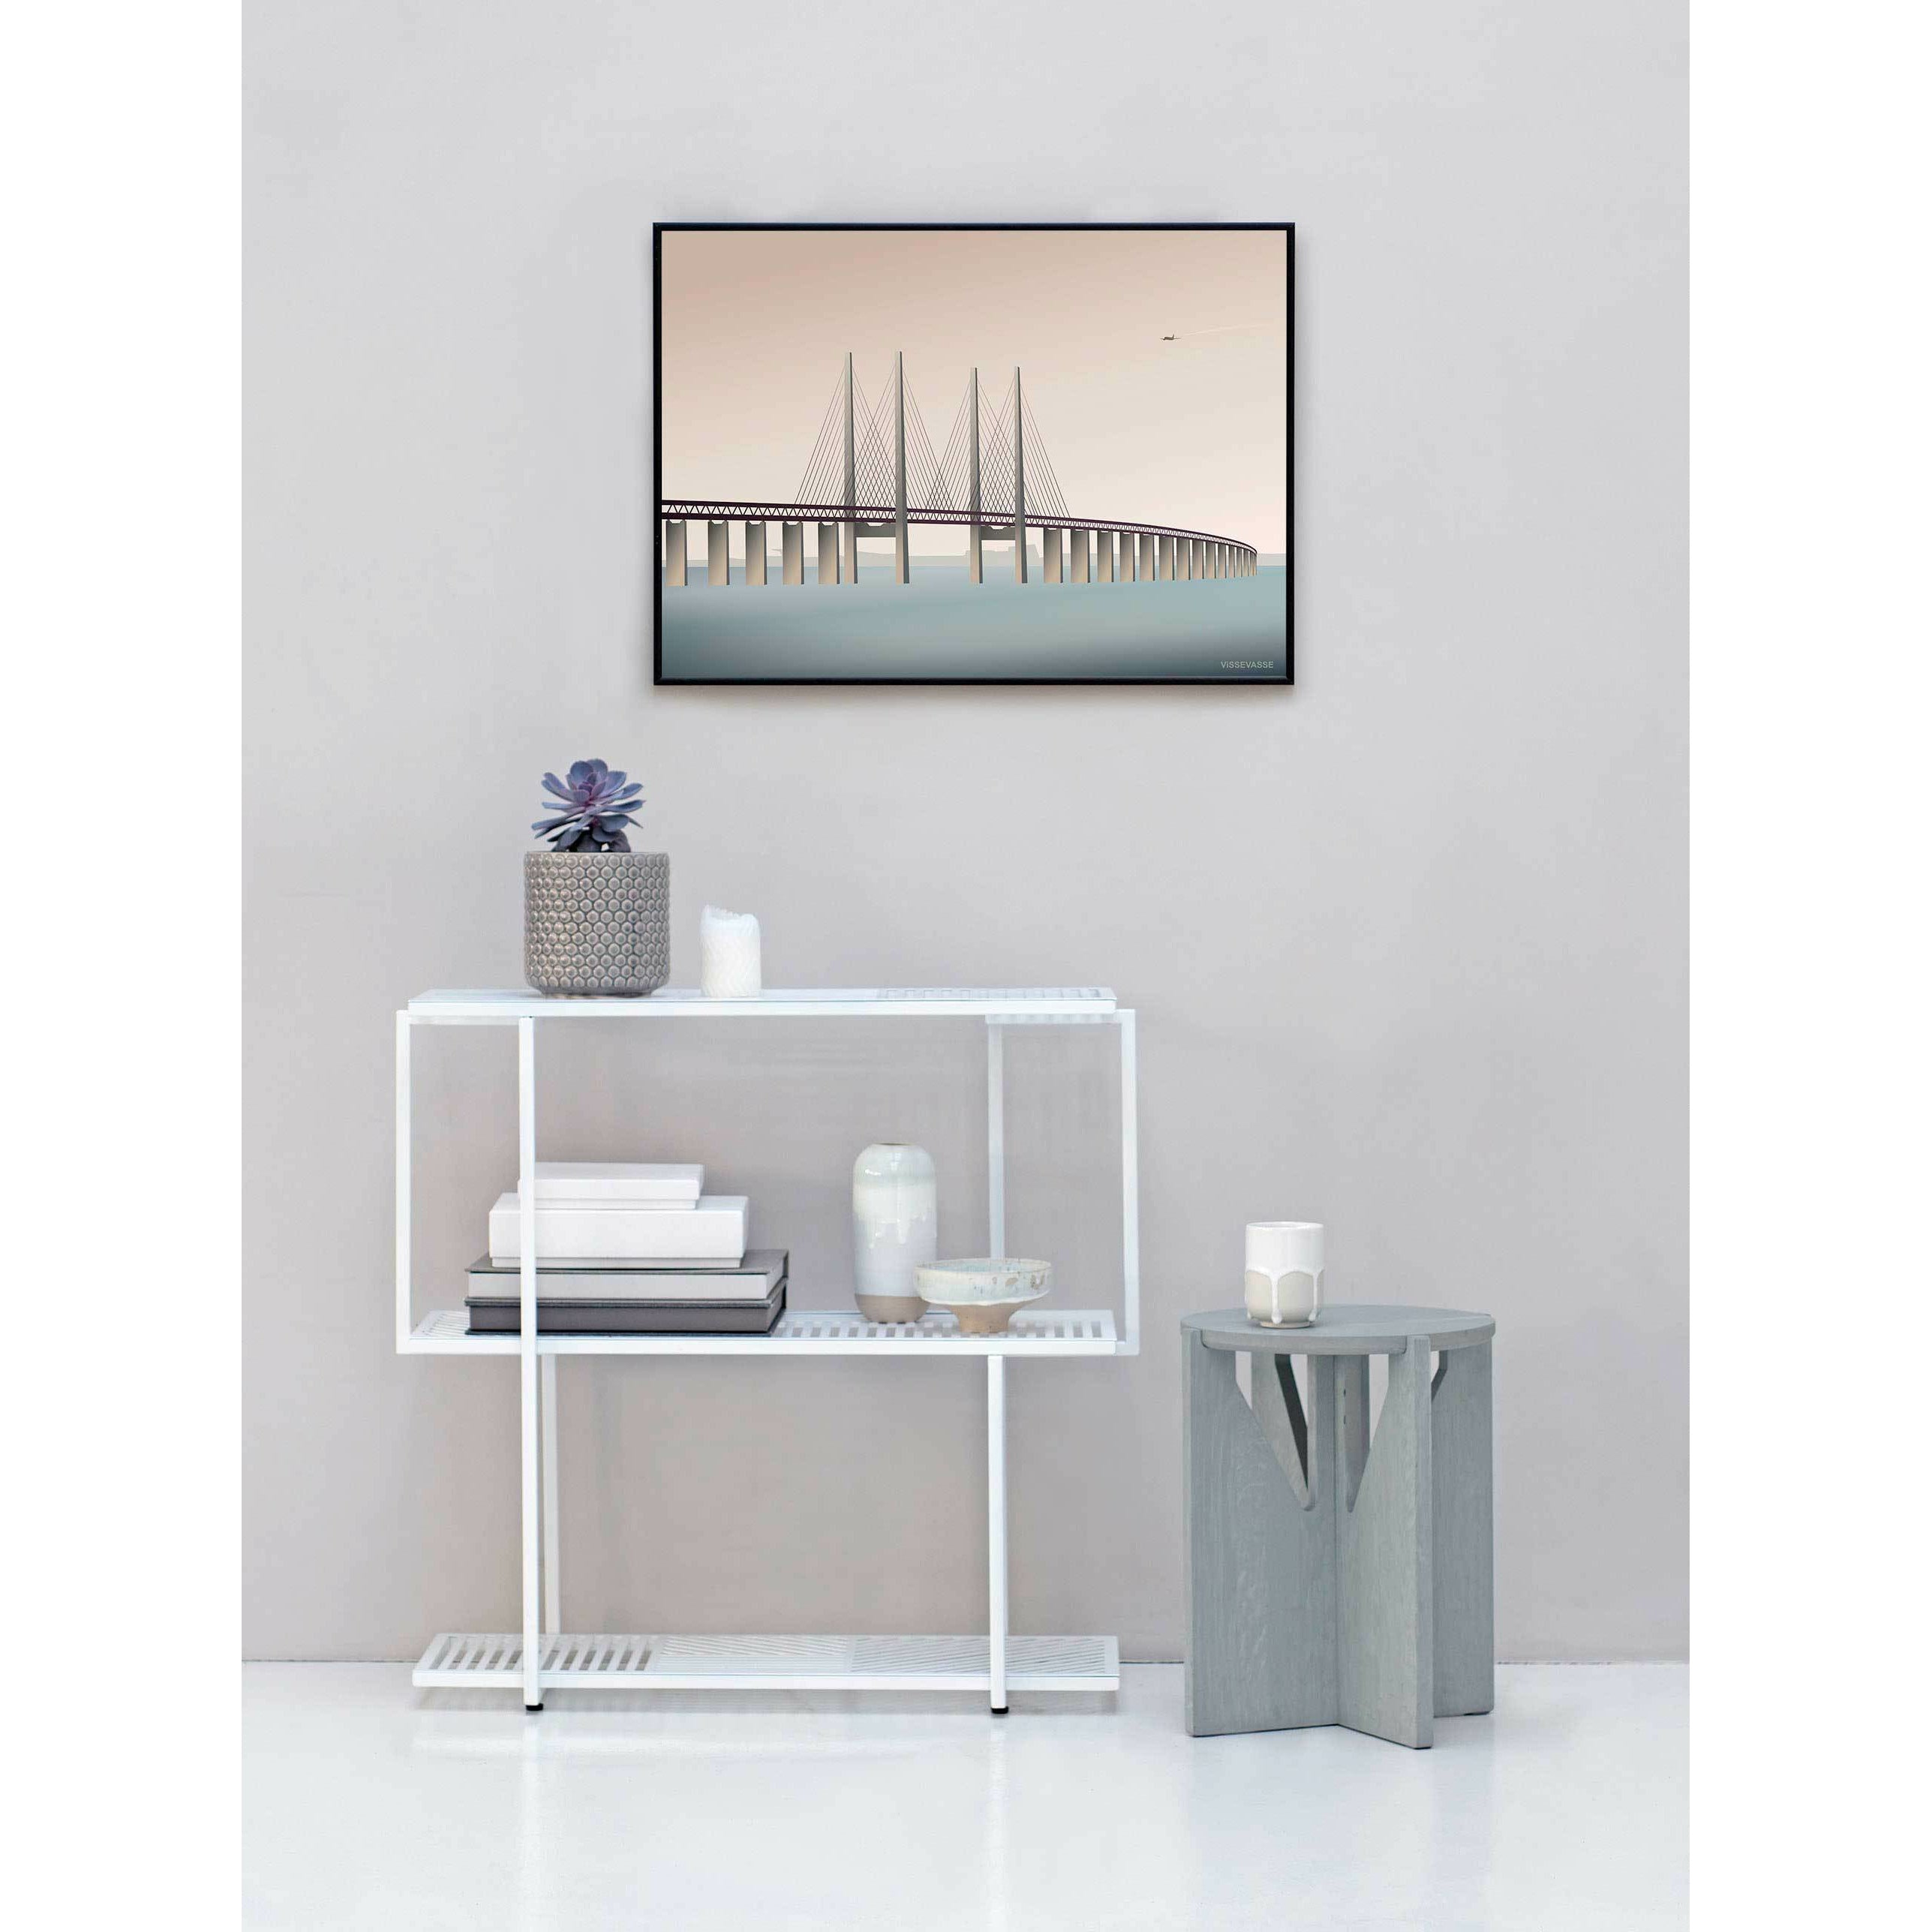 Vissevasse Øresund bridge affisch, 50x70 cm